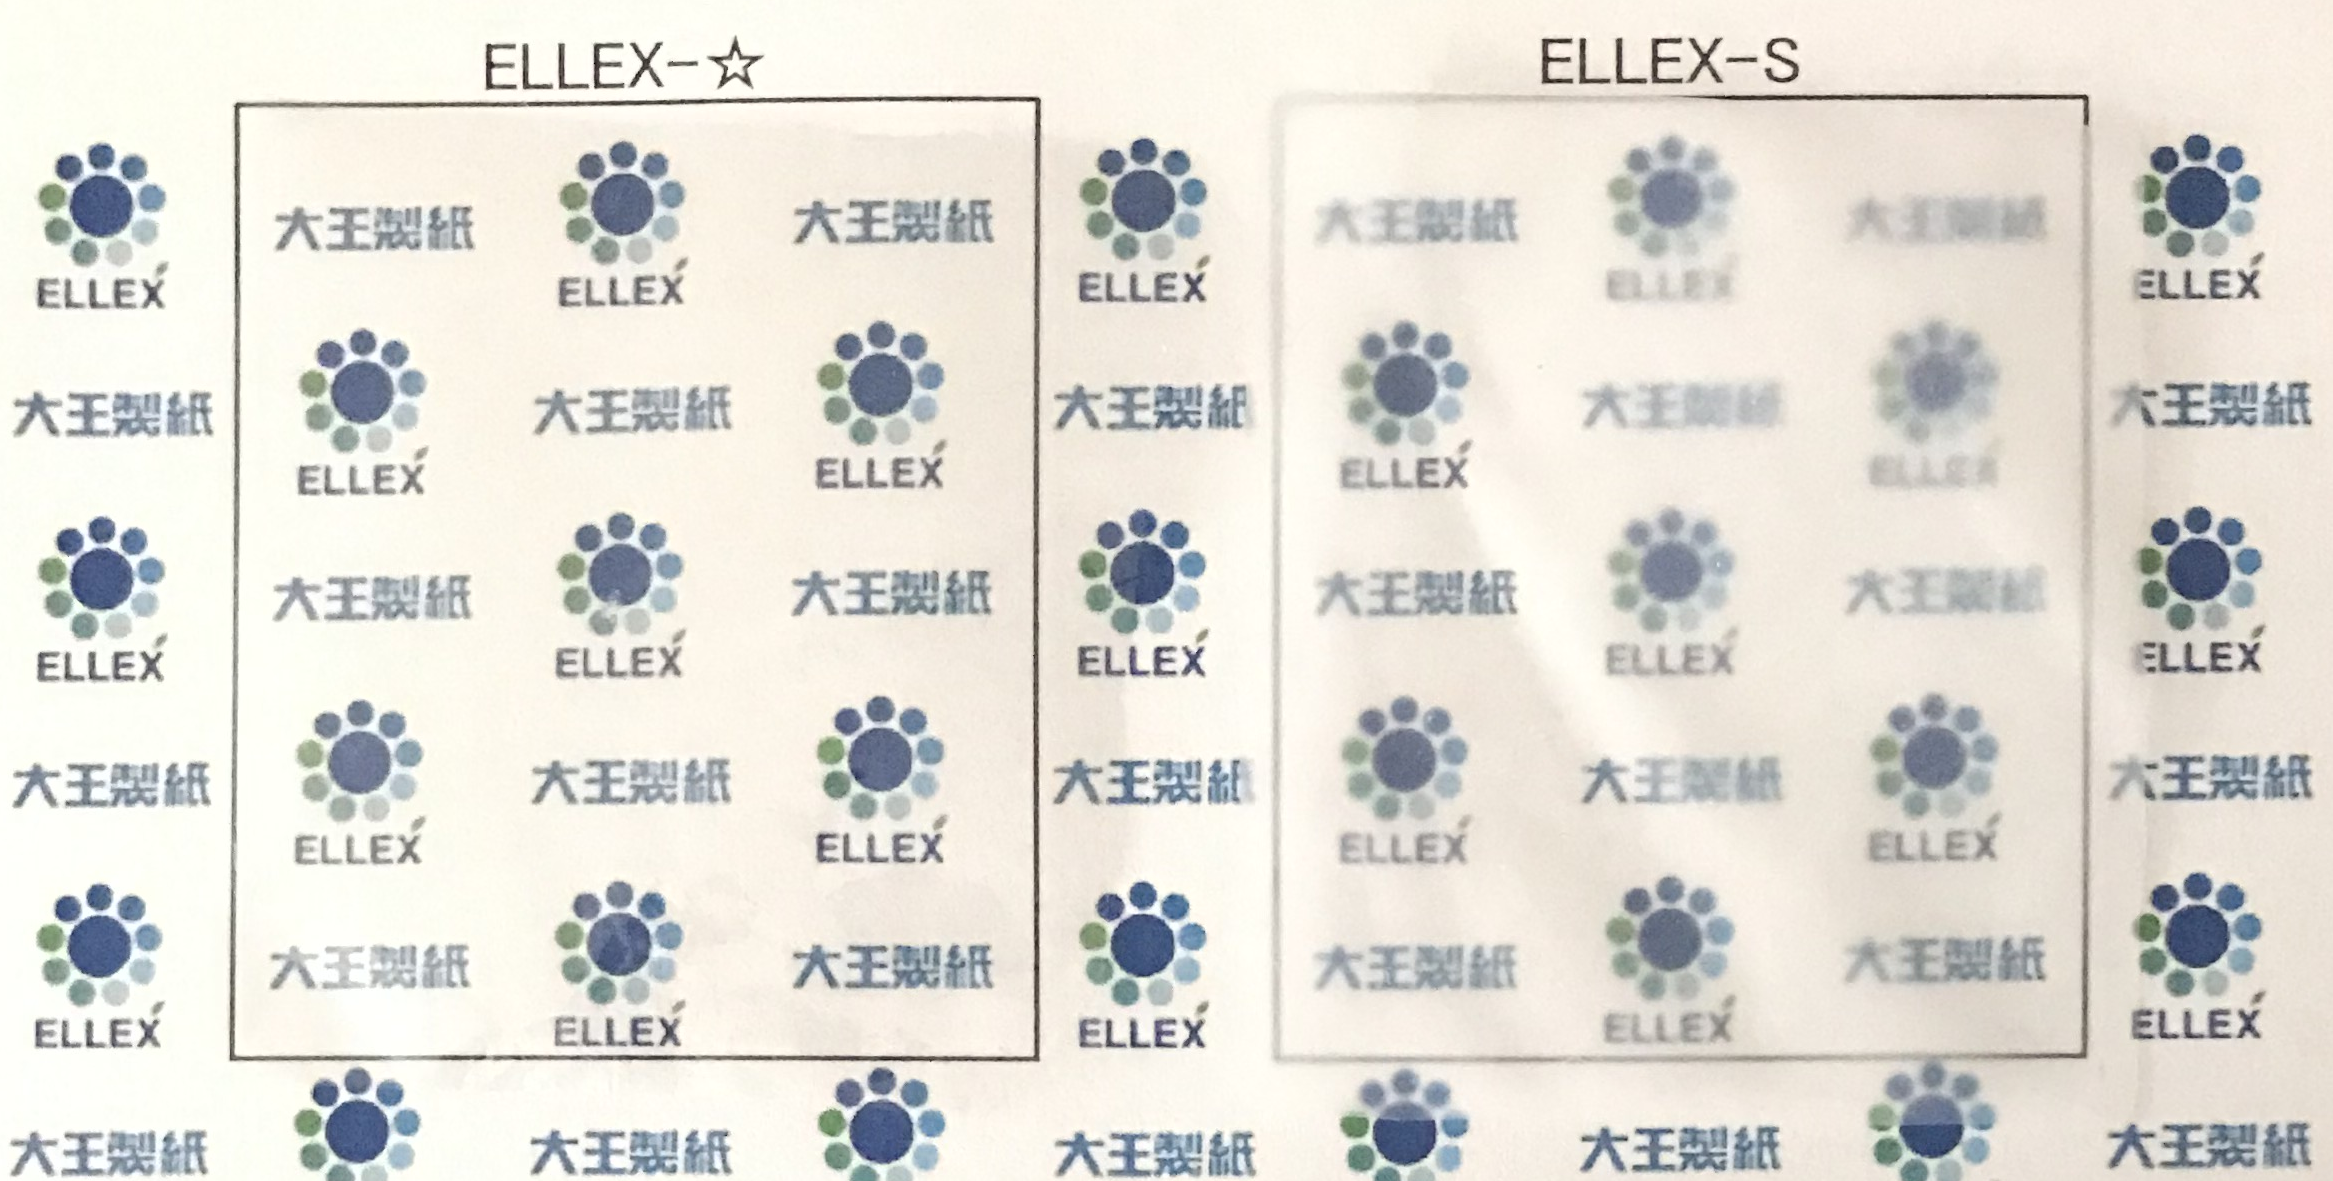 各水分散液 ELLEX-Sから作製したフィルム画像